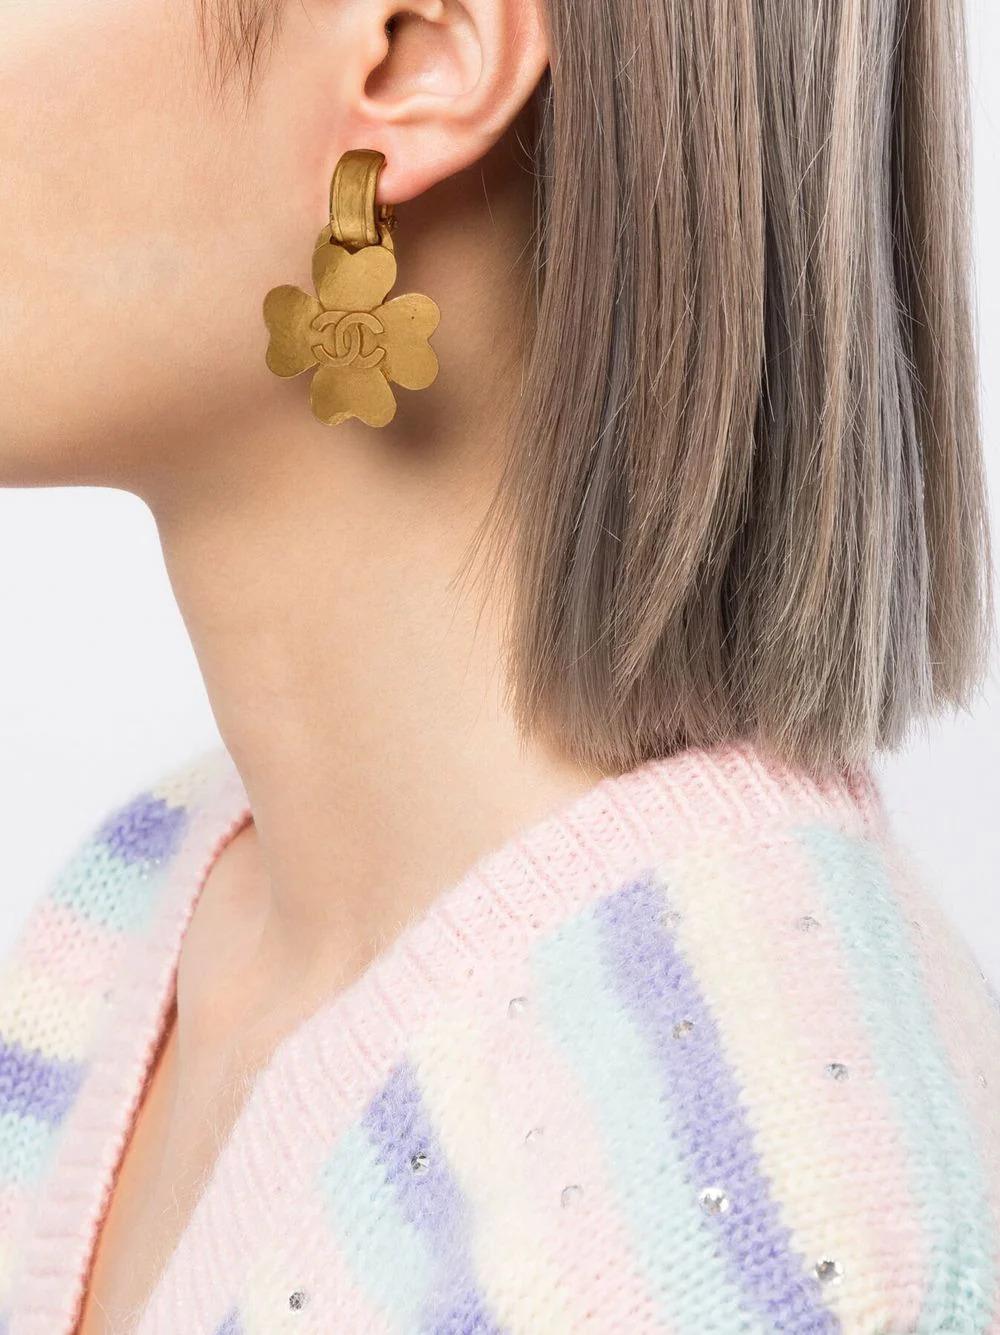 Diese Ohrringe im Vintage-Stil aus dem Jahr 1995 zeigen ein goldfarbenes vierblättriges Kleeblatt, das an einem kleinen Ring hängt und in der Mitte mit einem ineinandergreifenden 